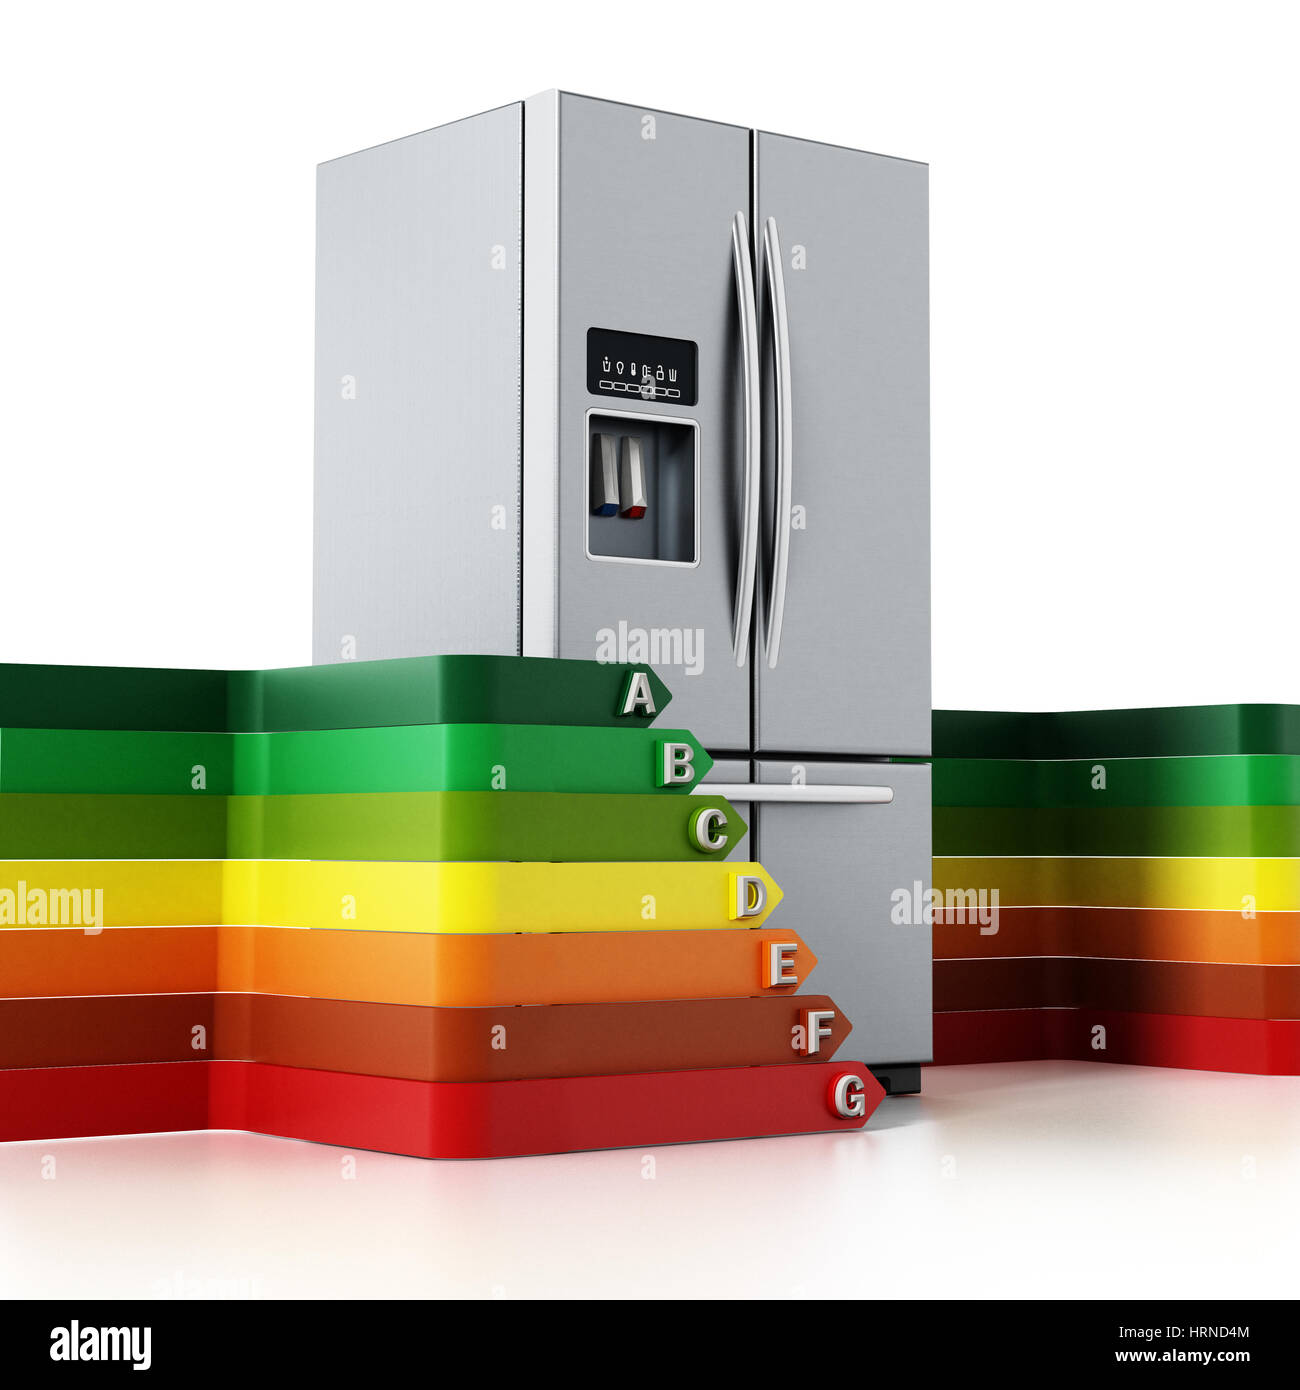 Refrigerador de plata genérico y los niveles de rendimiento energético gráfico. Ilustración 3D. Foto de stock